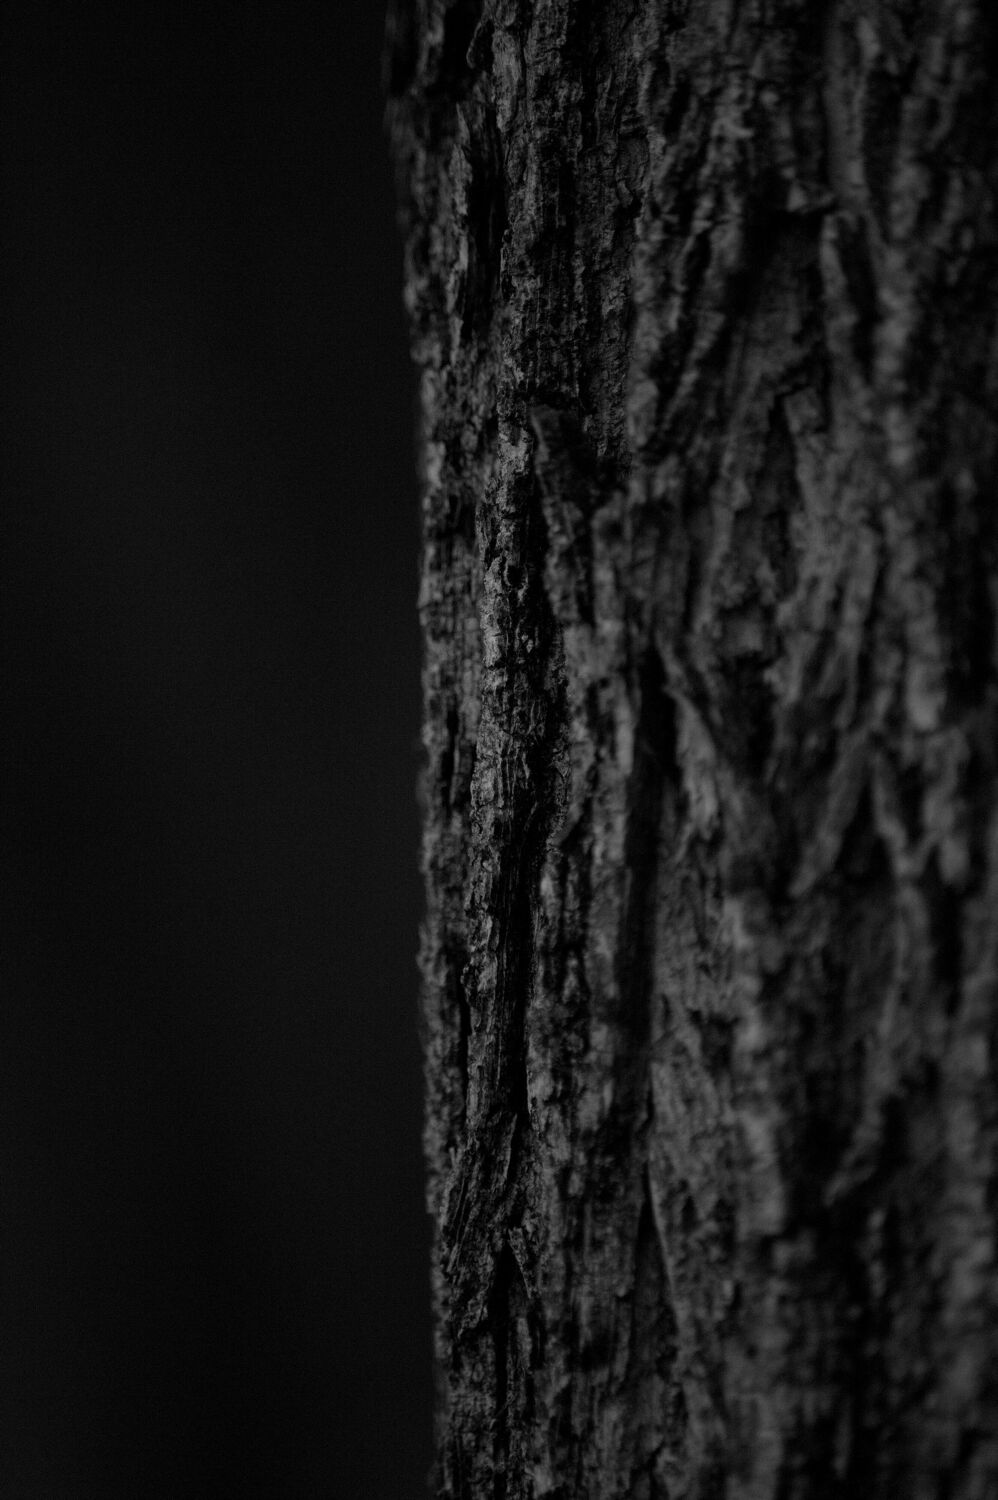 Bild mit Baum, Baumstamm, Baumrinde, schwarz & weiss, Schwarz/Weiß Fotografie